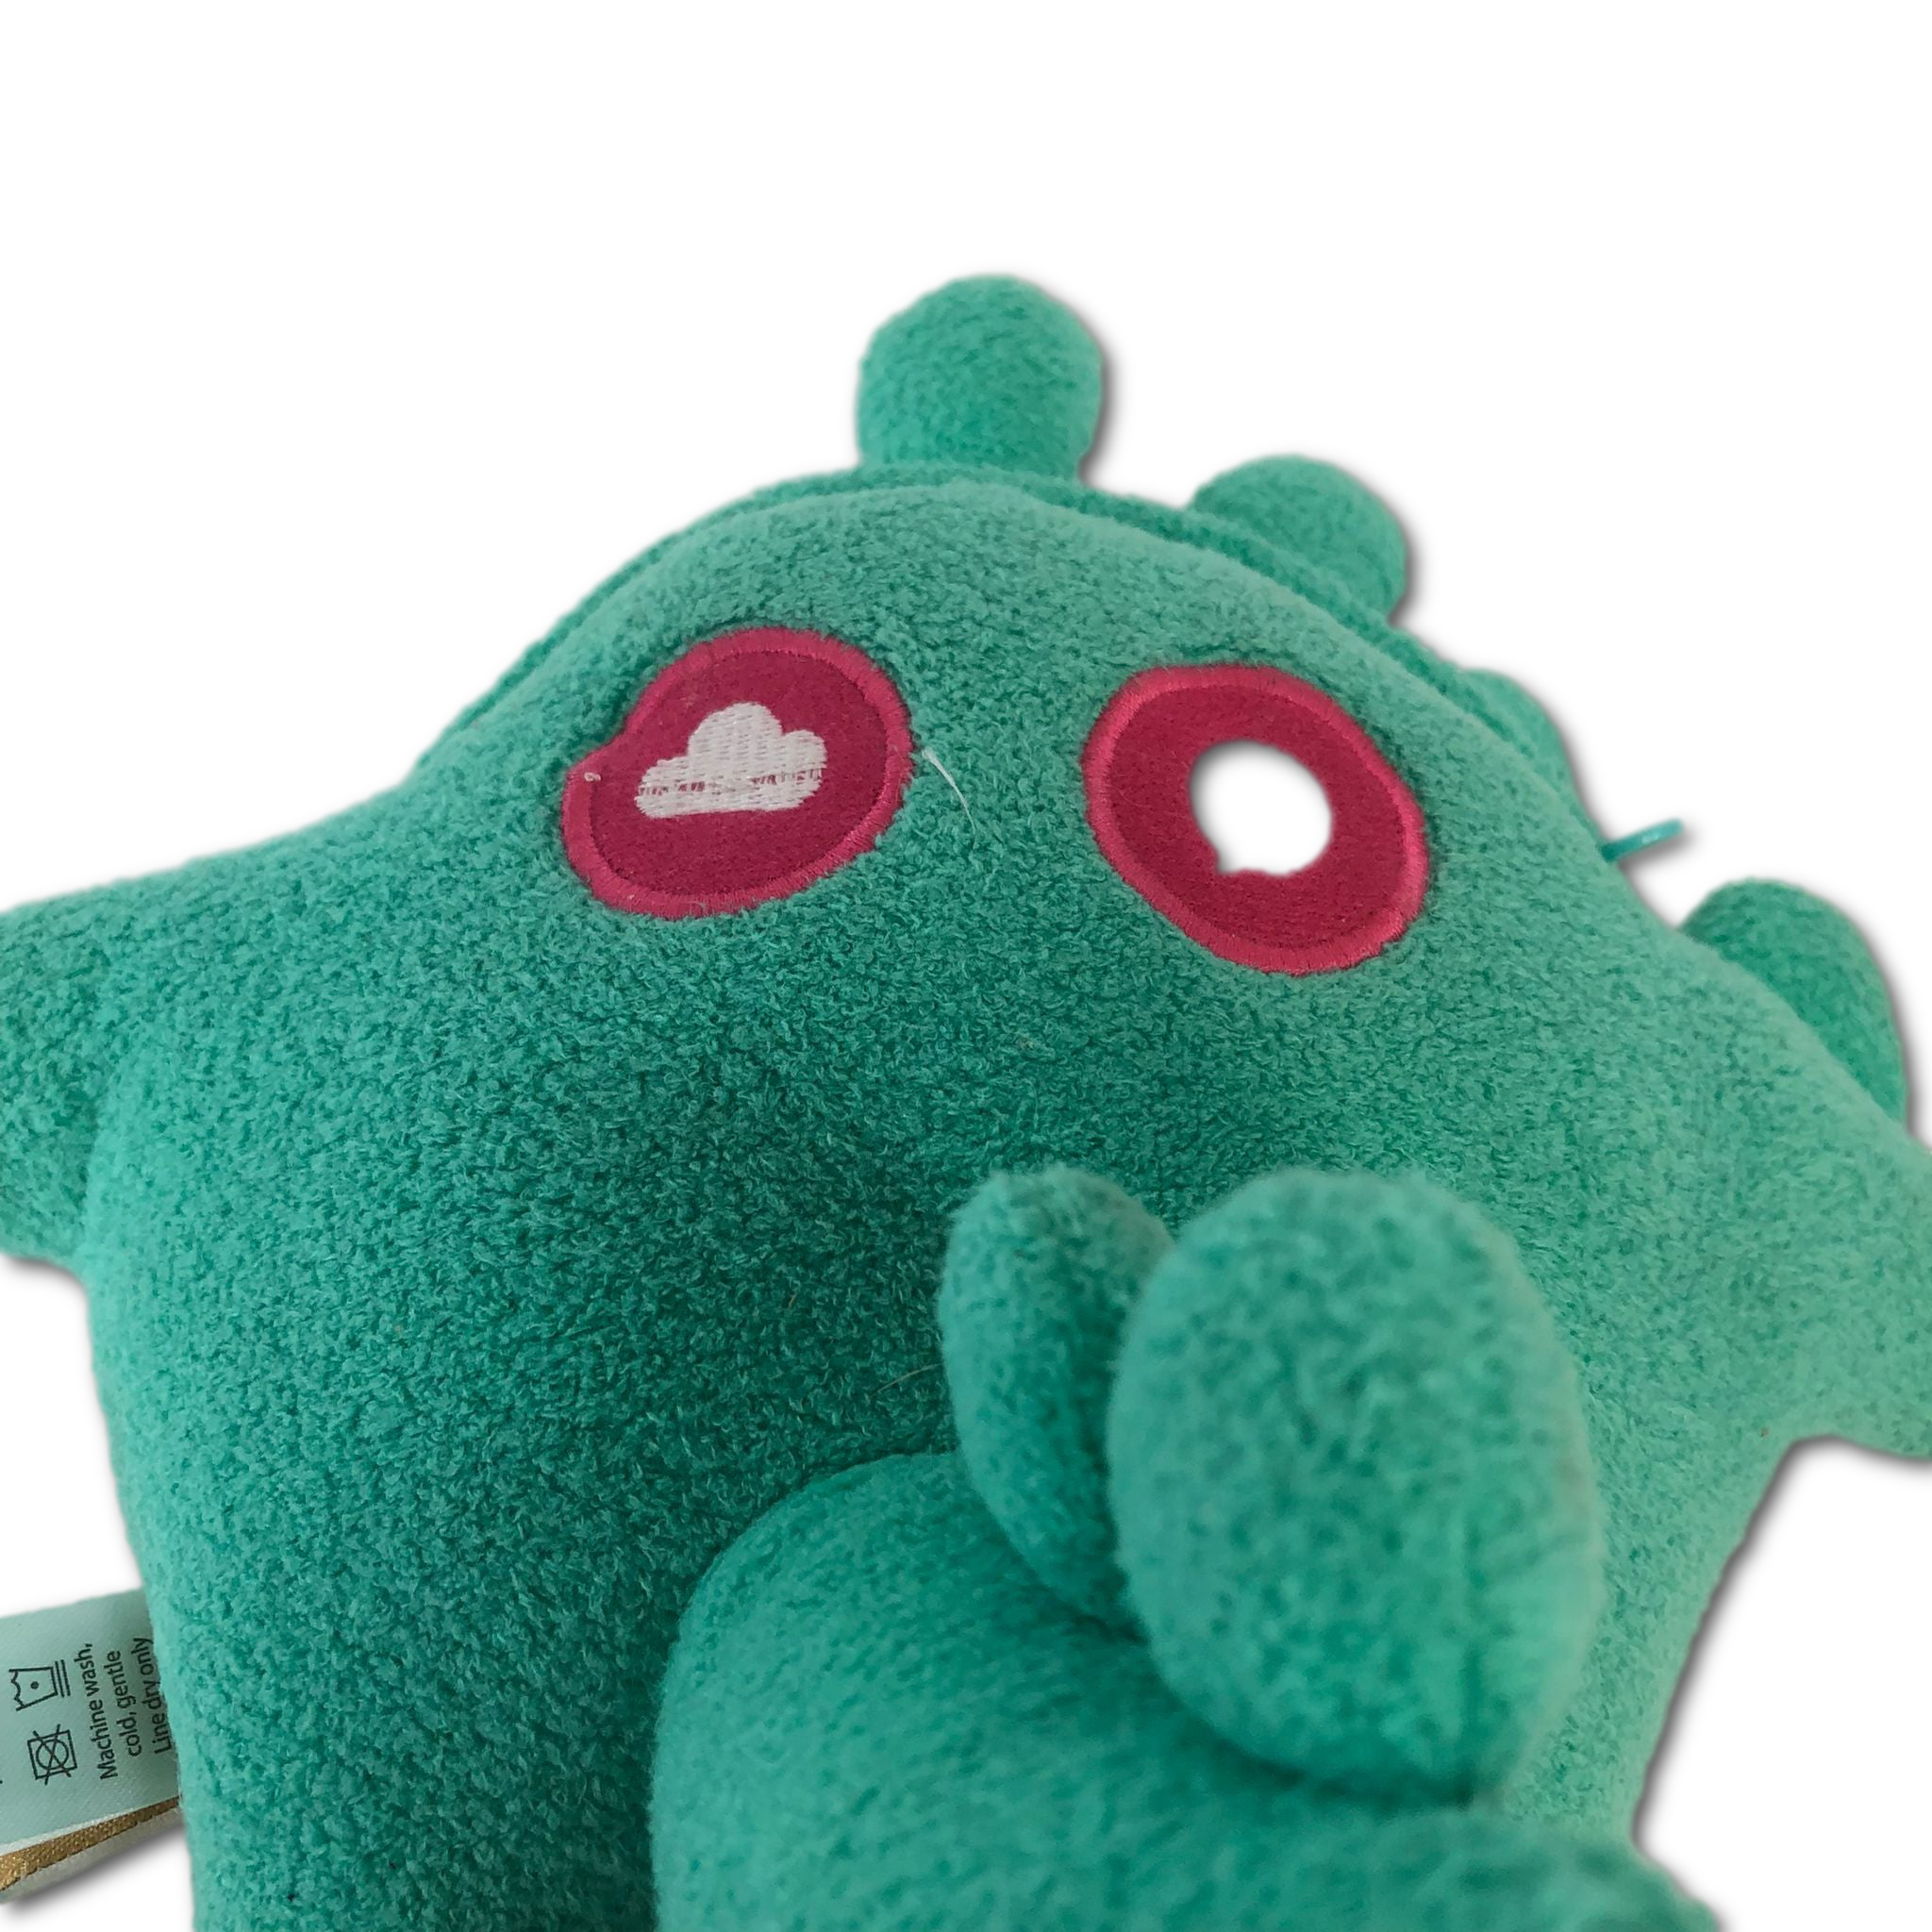 Green Toymail Plush Dinosaur Stuffed Animal + Weensie Sound Maker Keychain Green Weensie 3.5"in Plush